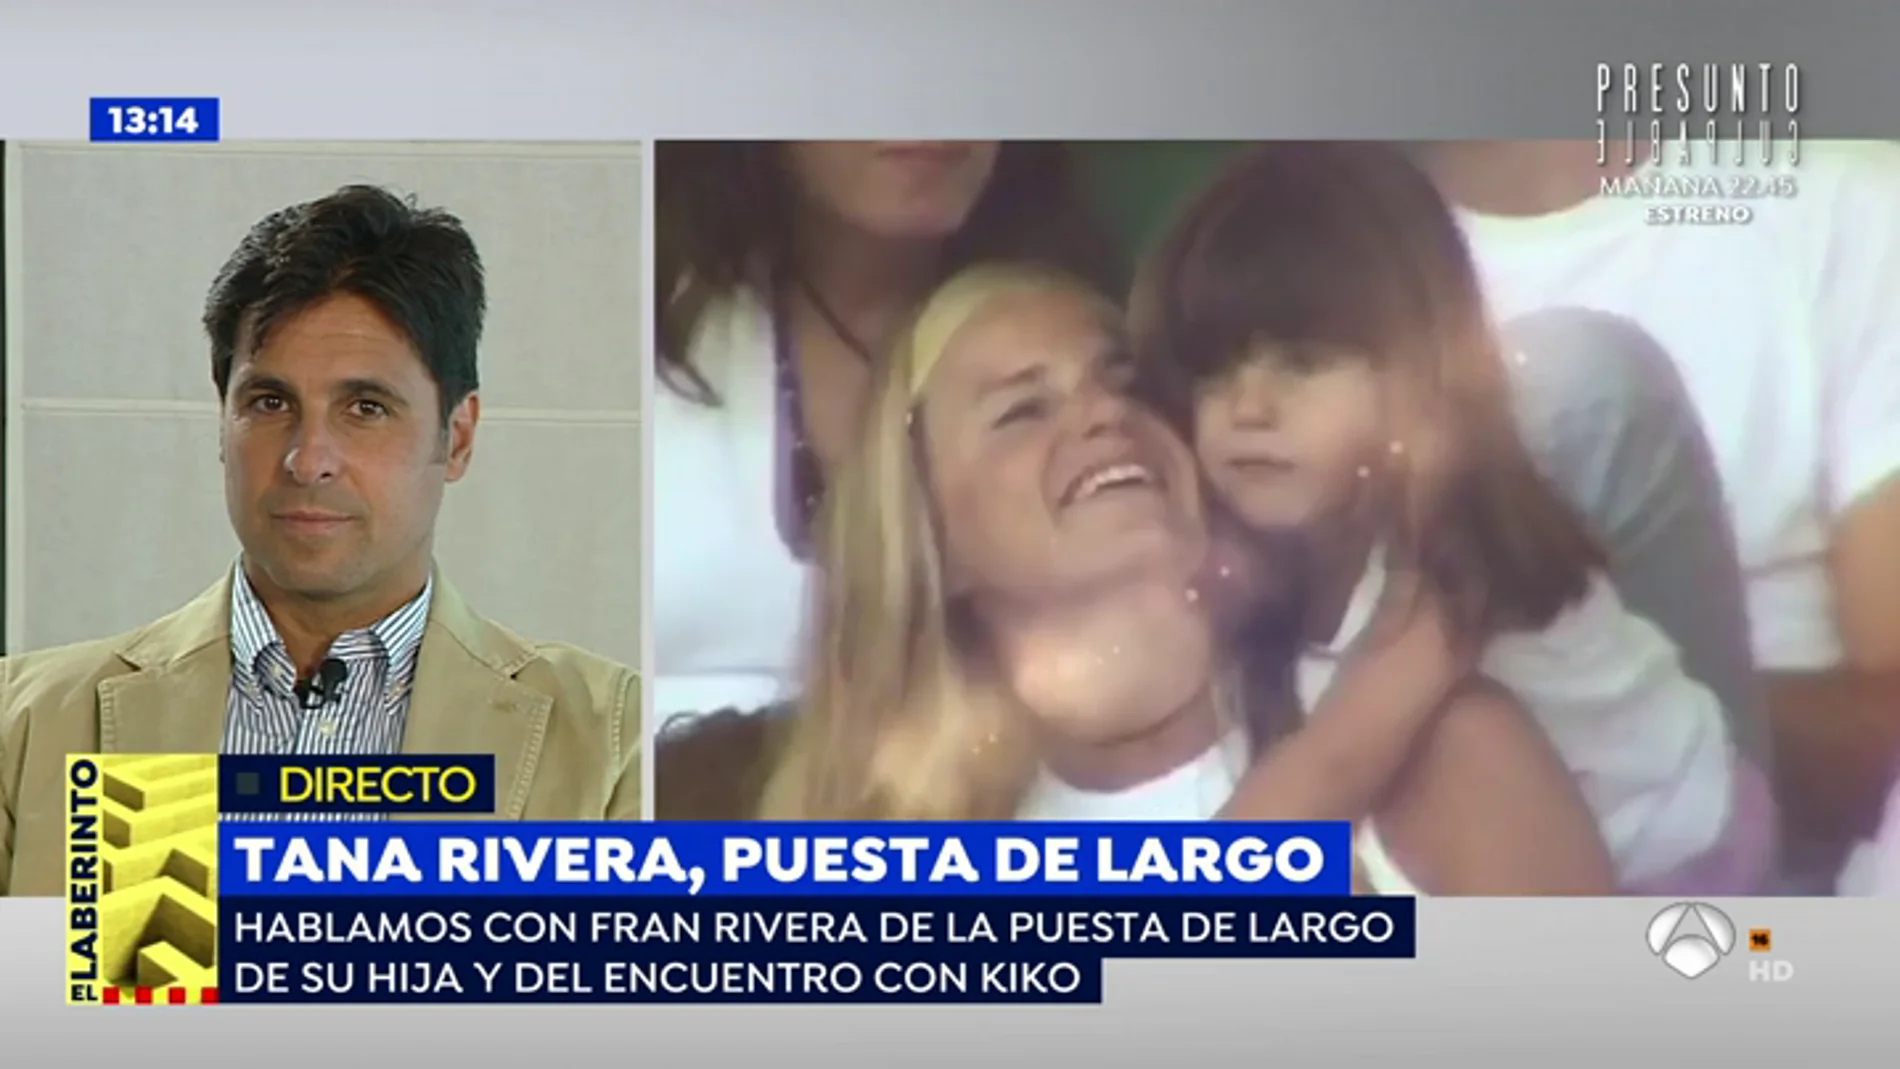 El emotivo vídeo homenaje de Fran Rivera a su hija 'Tana' en su 18 cumpleaños